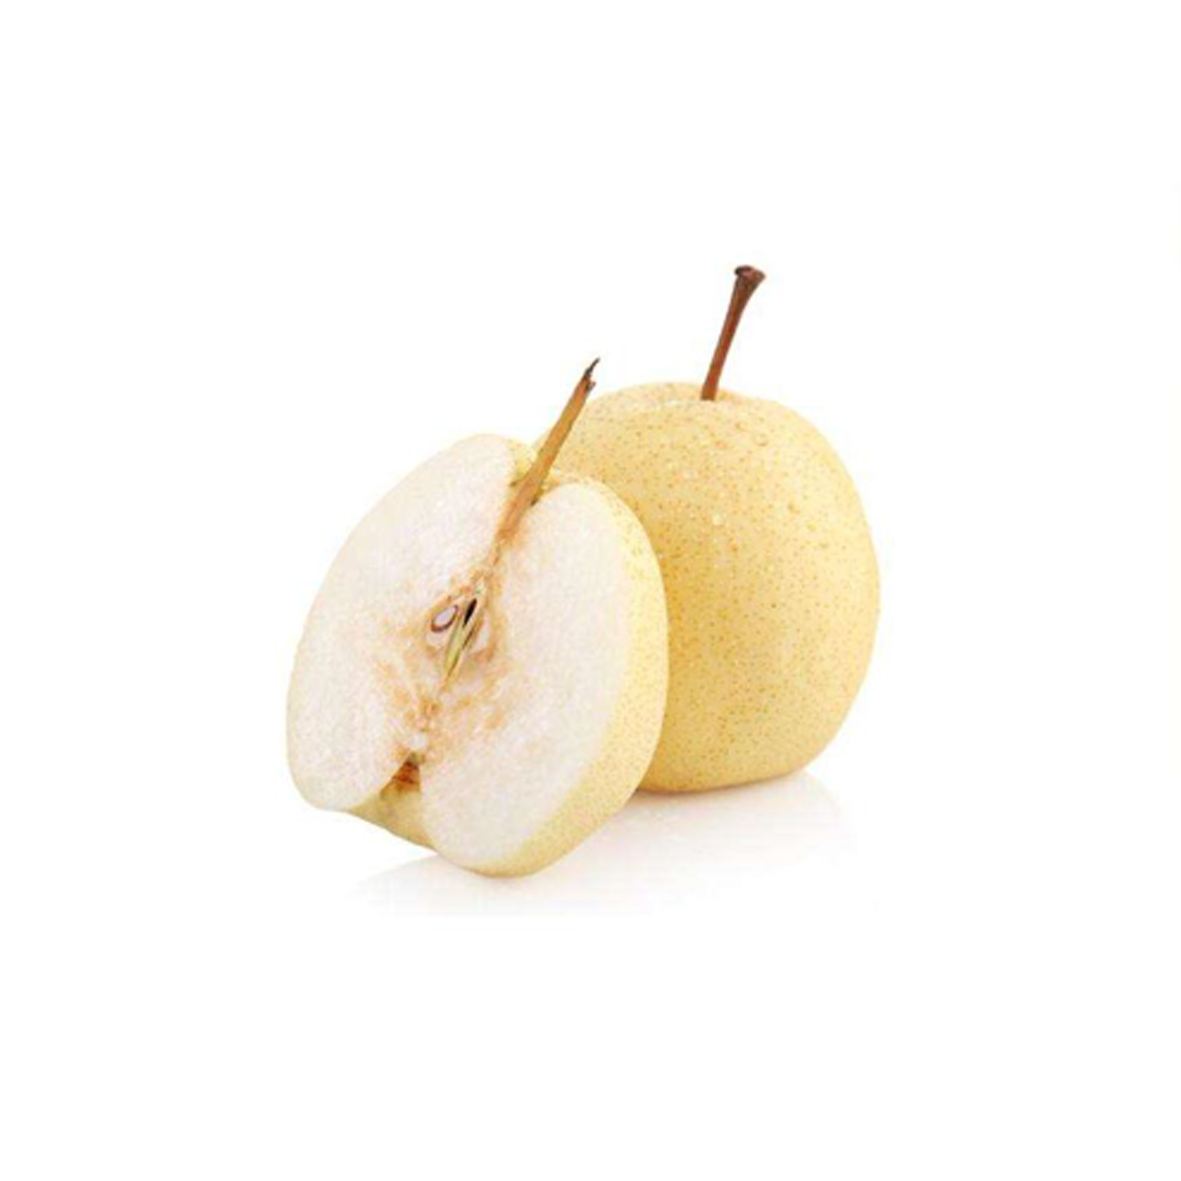 【零售水果】山西 贡梨 中果 500g-梨子-水果零售-热销-农伯伯